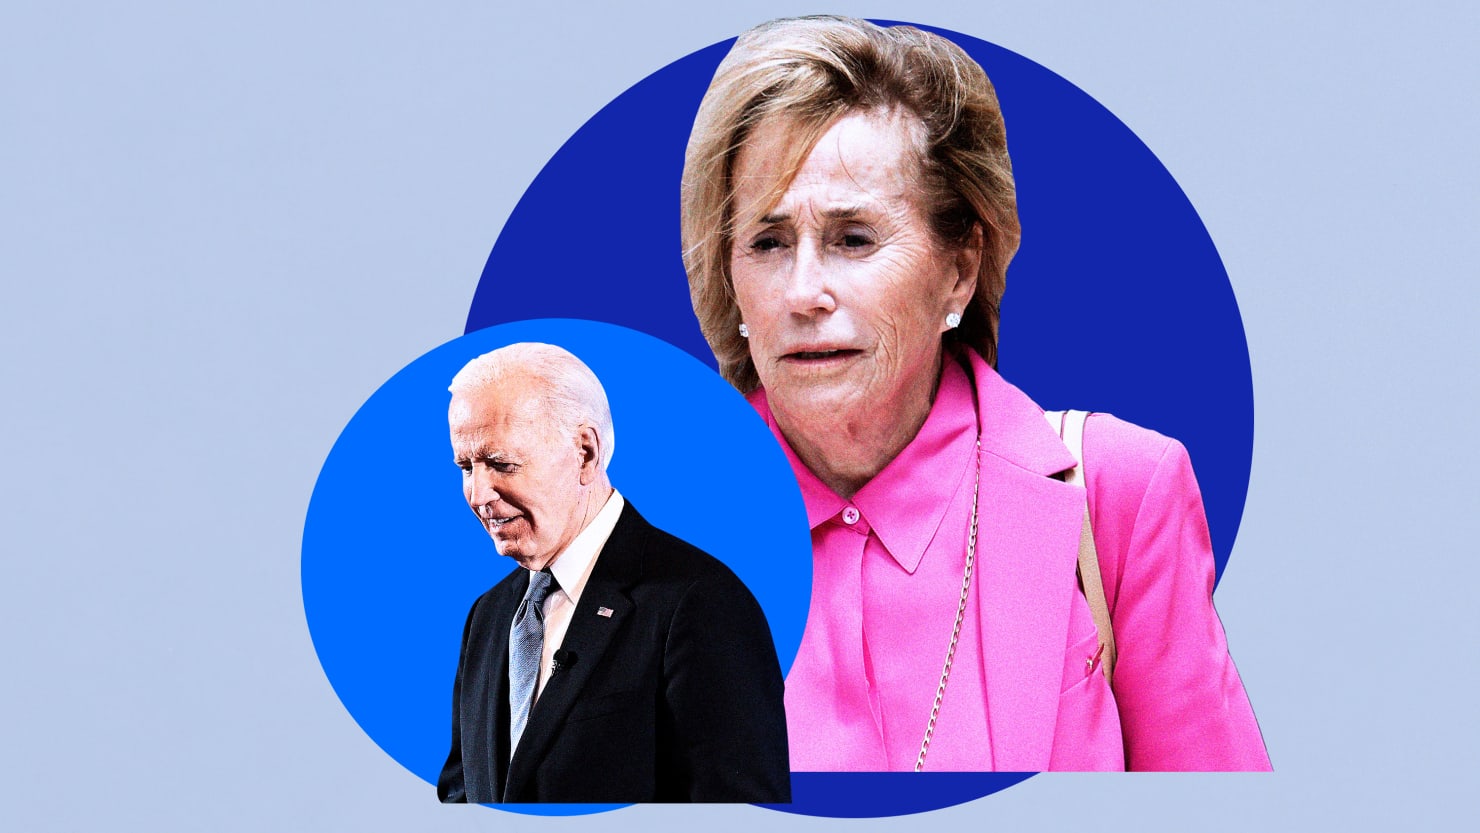 La sœur de Biden, Valerie Owens, doit lui dire de partir avec dignité, disent les démocrates